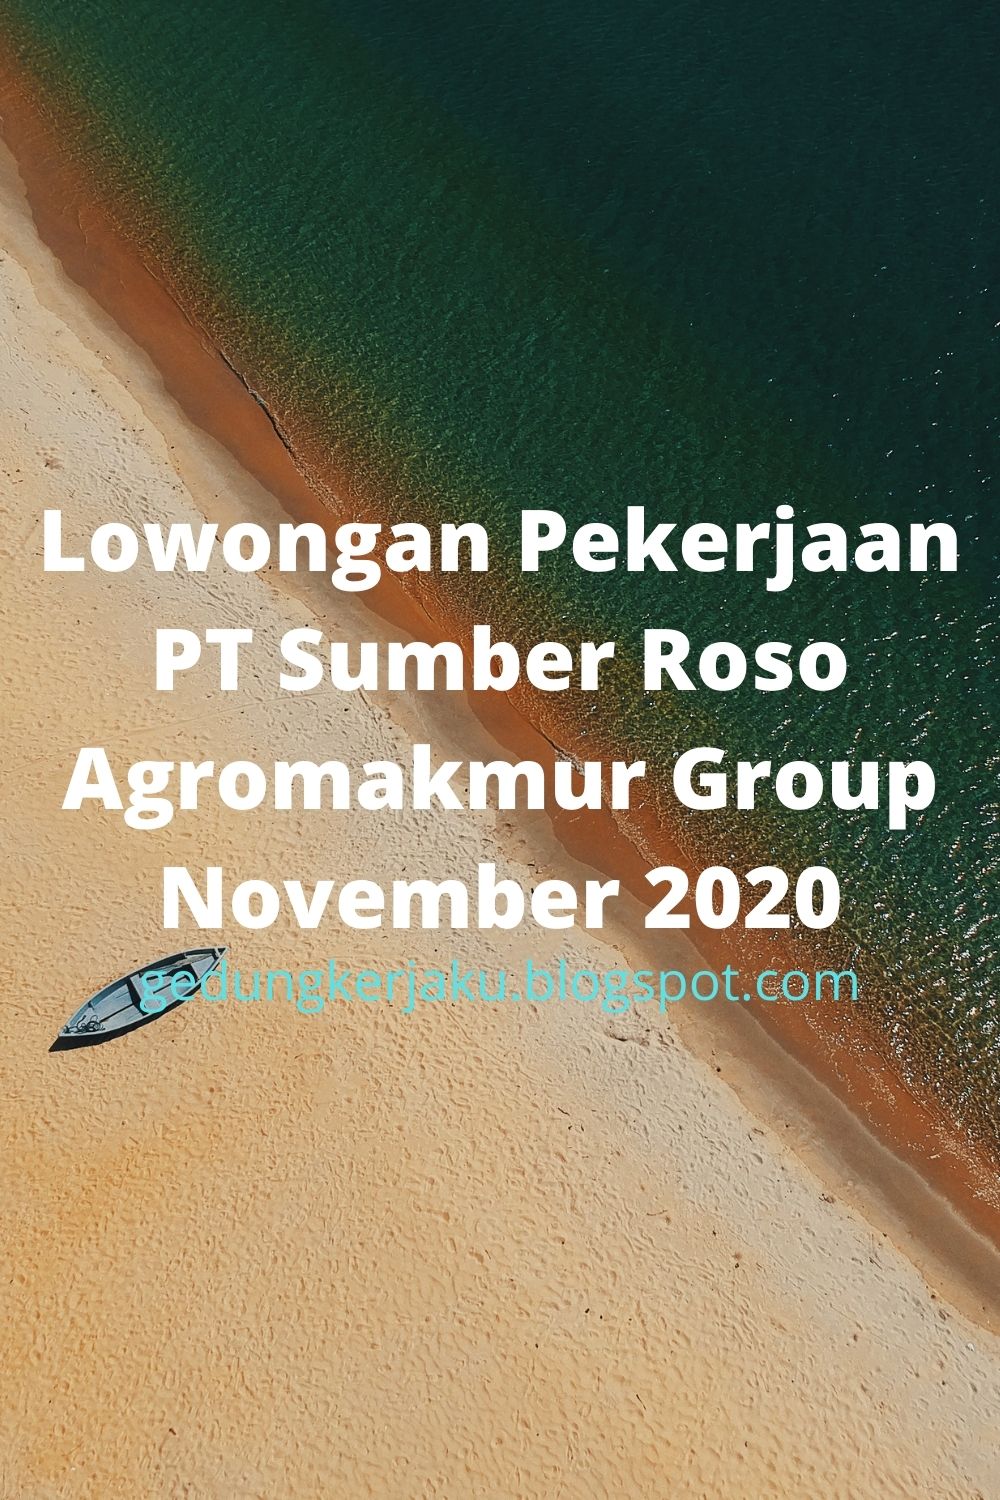 Lowongan Pekerjaan PT Sumber Roso Agromakmur Group November 2020